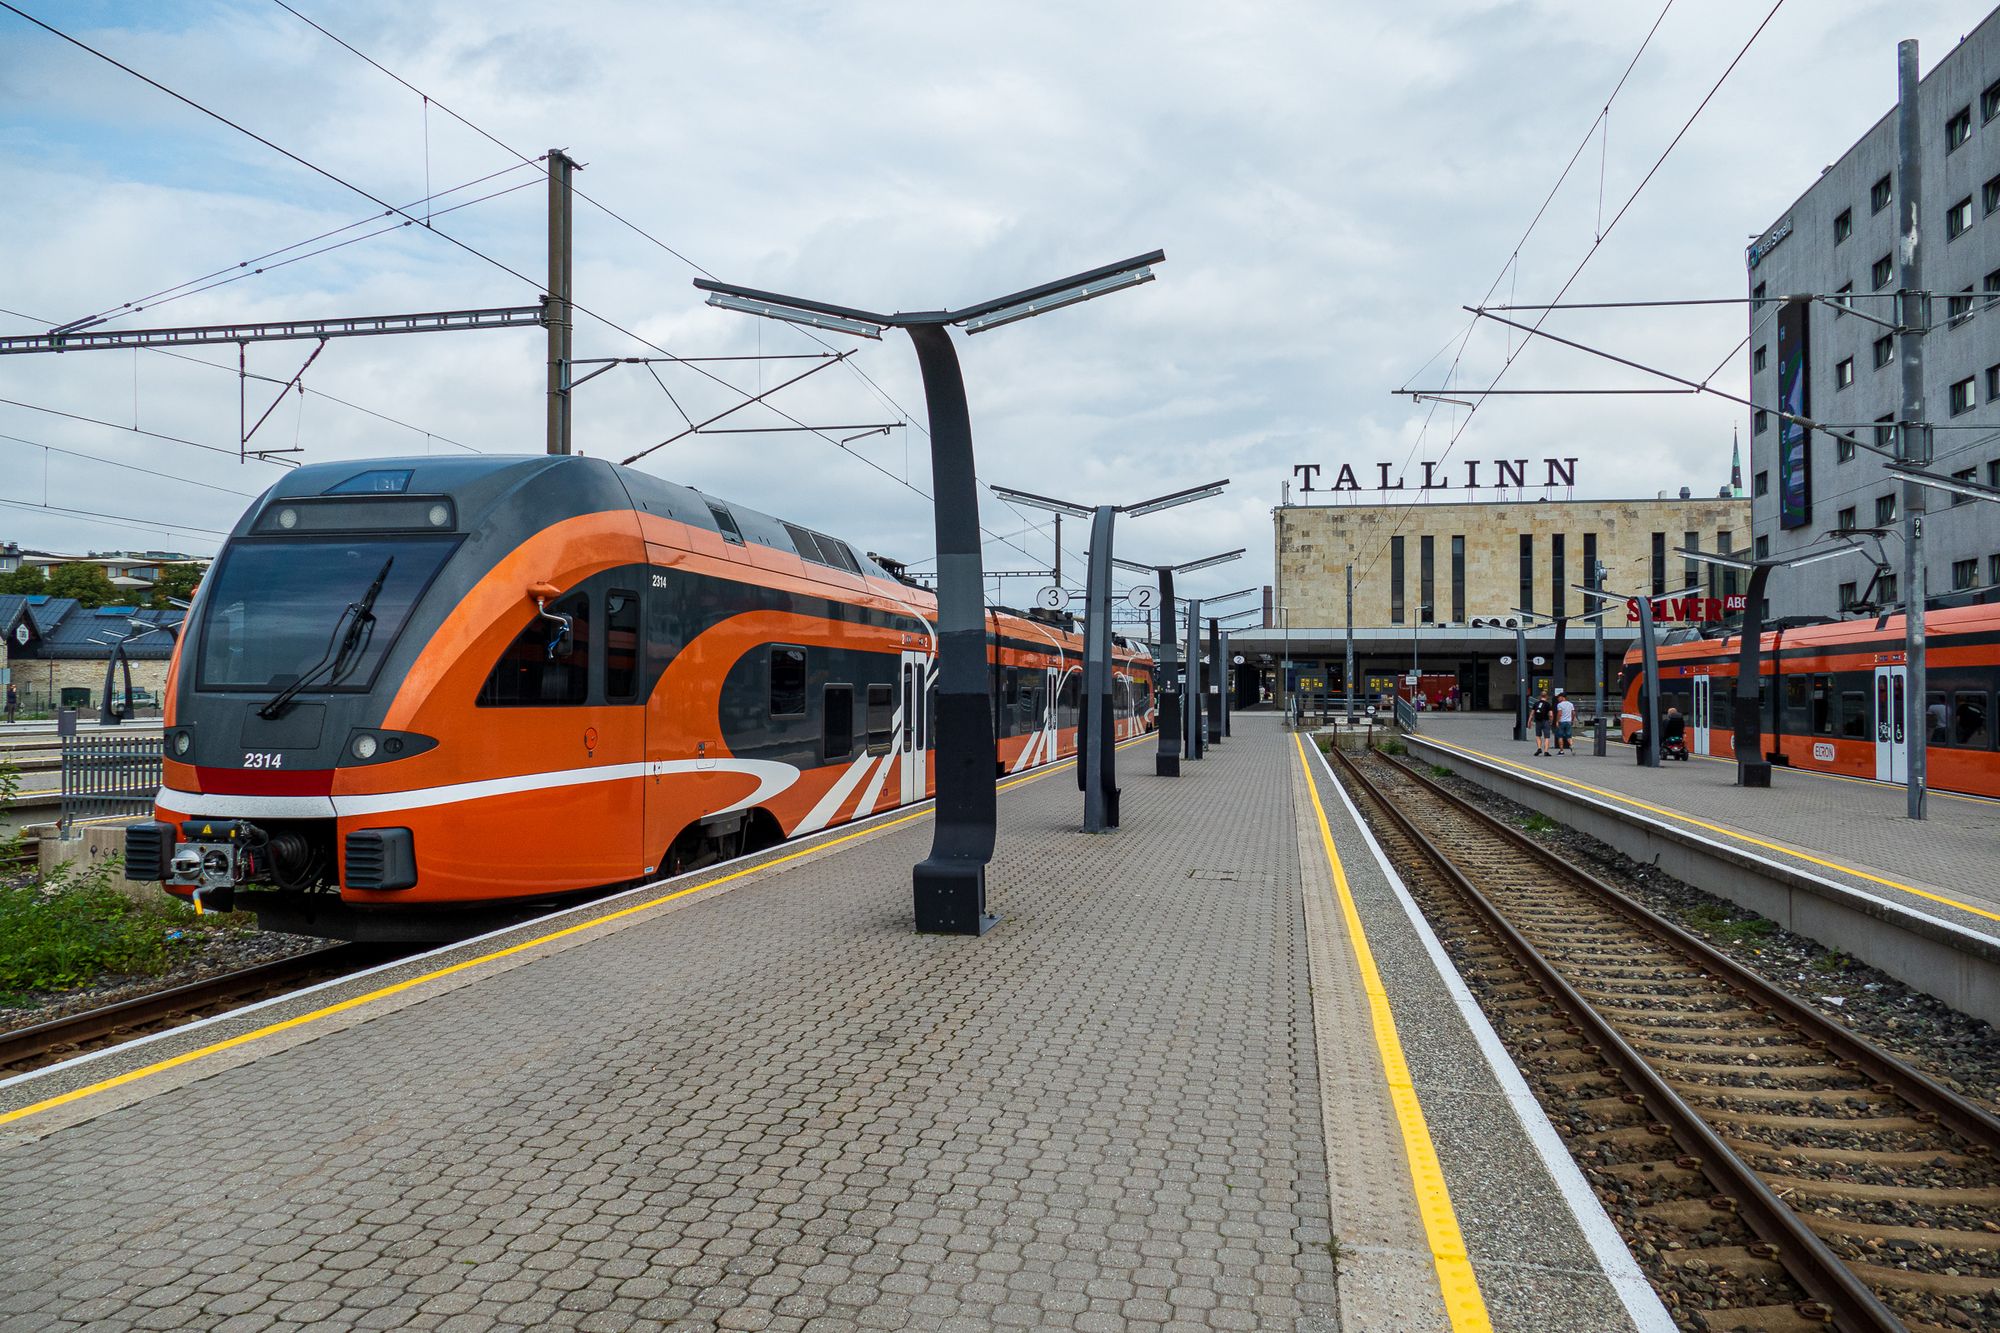 Bahnhof von Tallinn mit Triebwagen der estnischen Eisenbahn am Bahnsteig